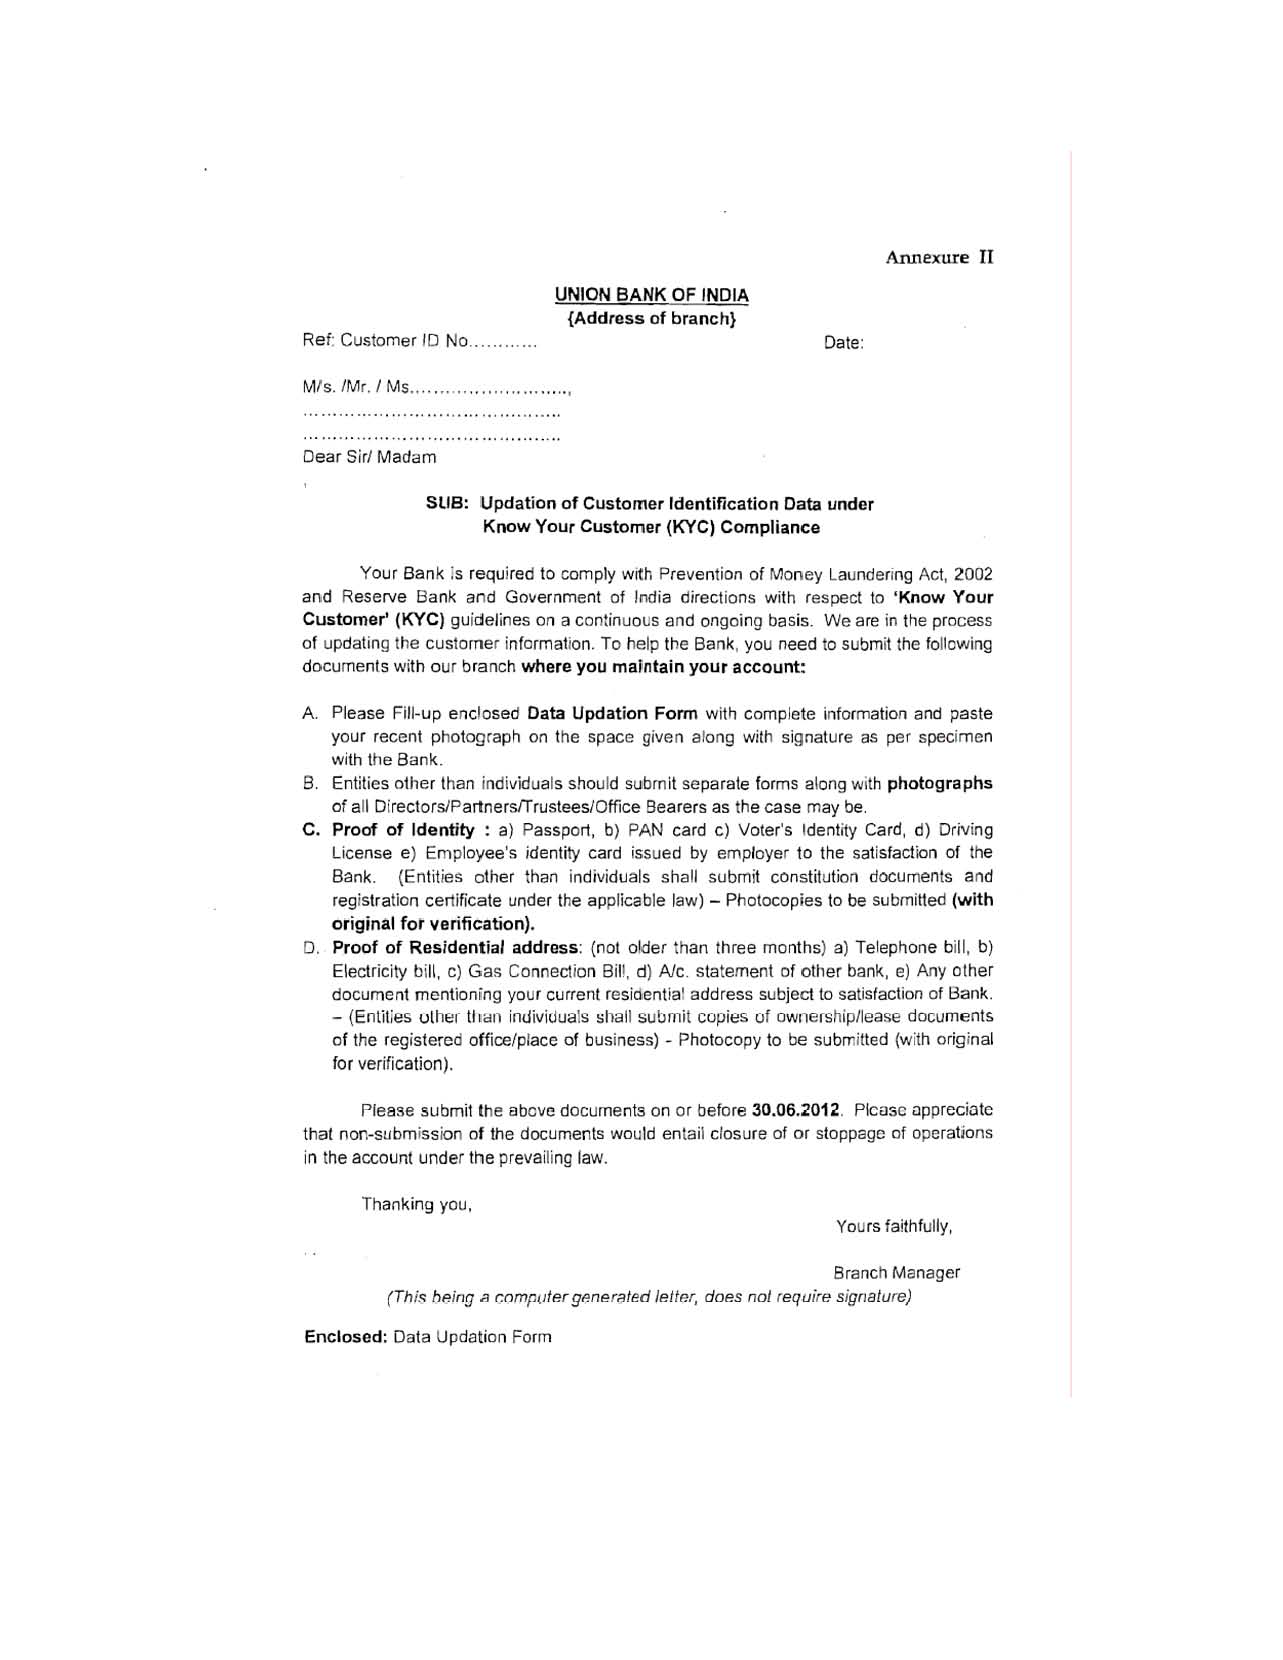 Union bank of India KYC Form - 15 15 EduVark